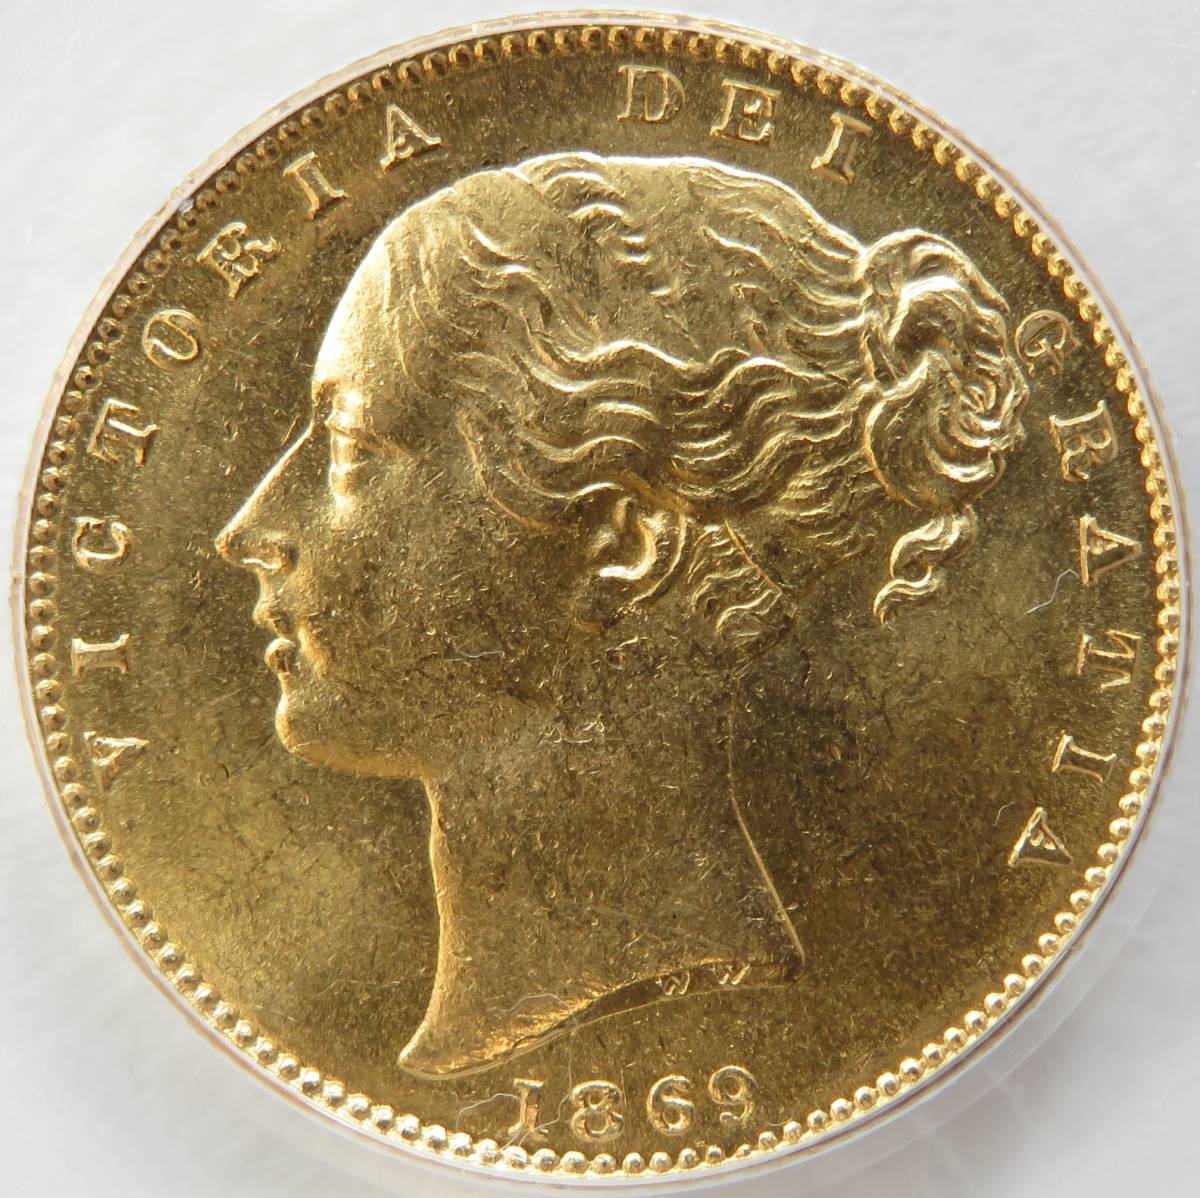 保存版】 MS61 PCGS ソブリン金貨 イギリス ヴィクトリア 1869年 - 旧貨幣/金貨/銀貨/記念硬貨